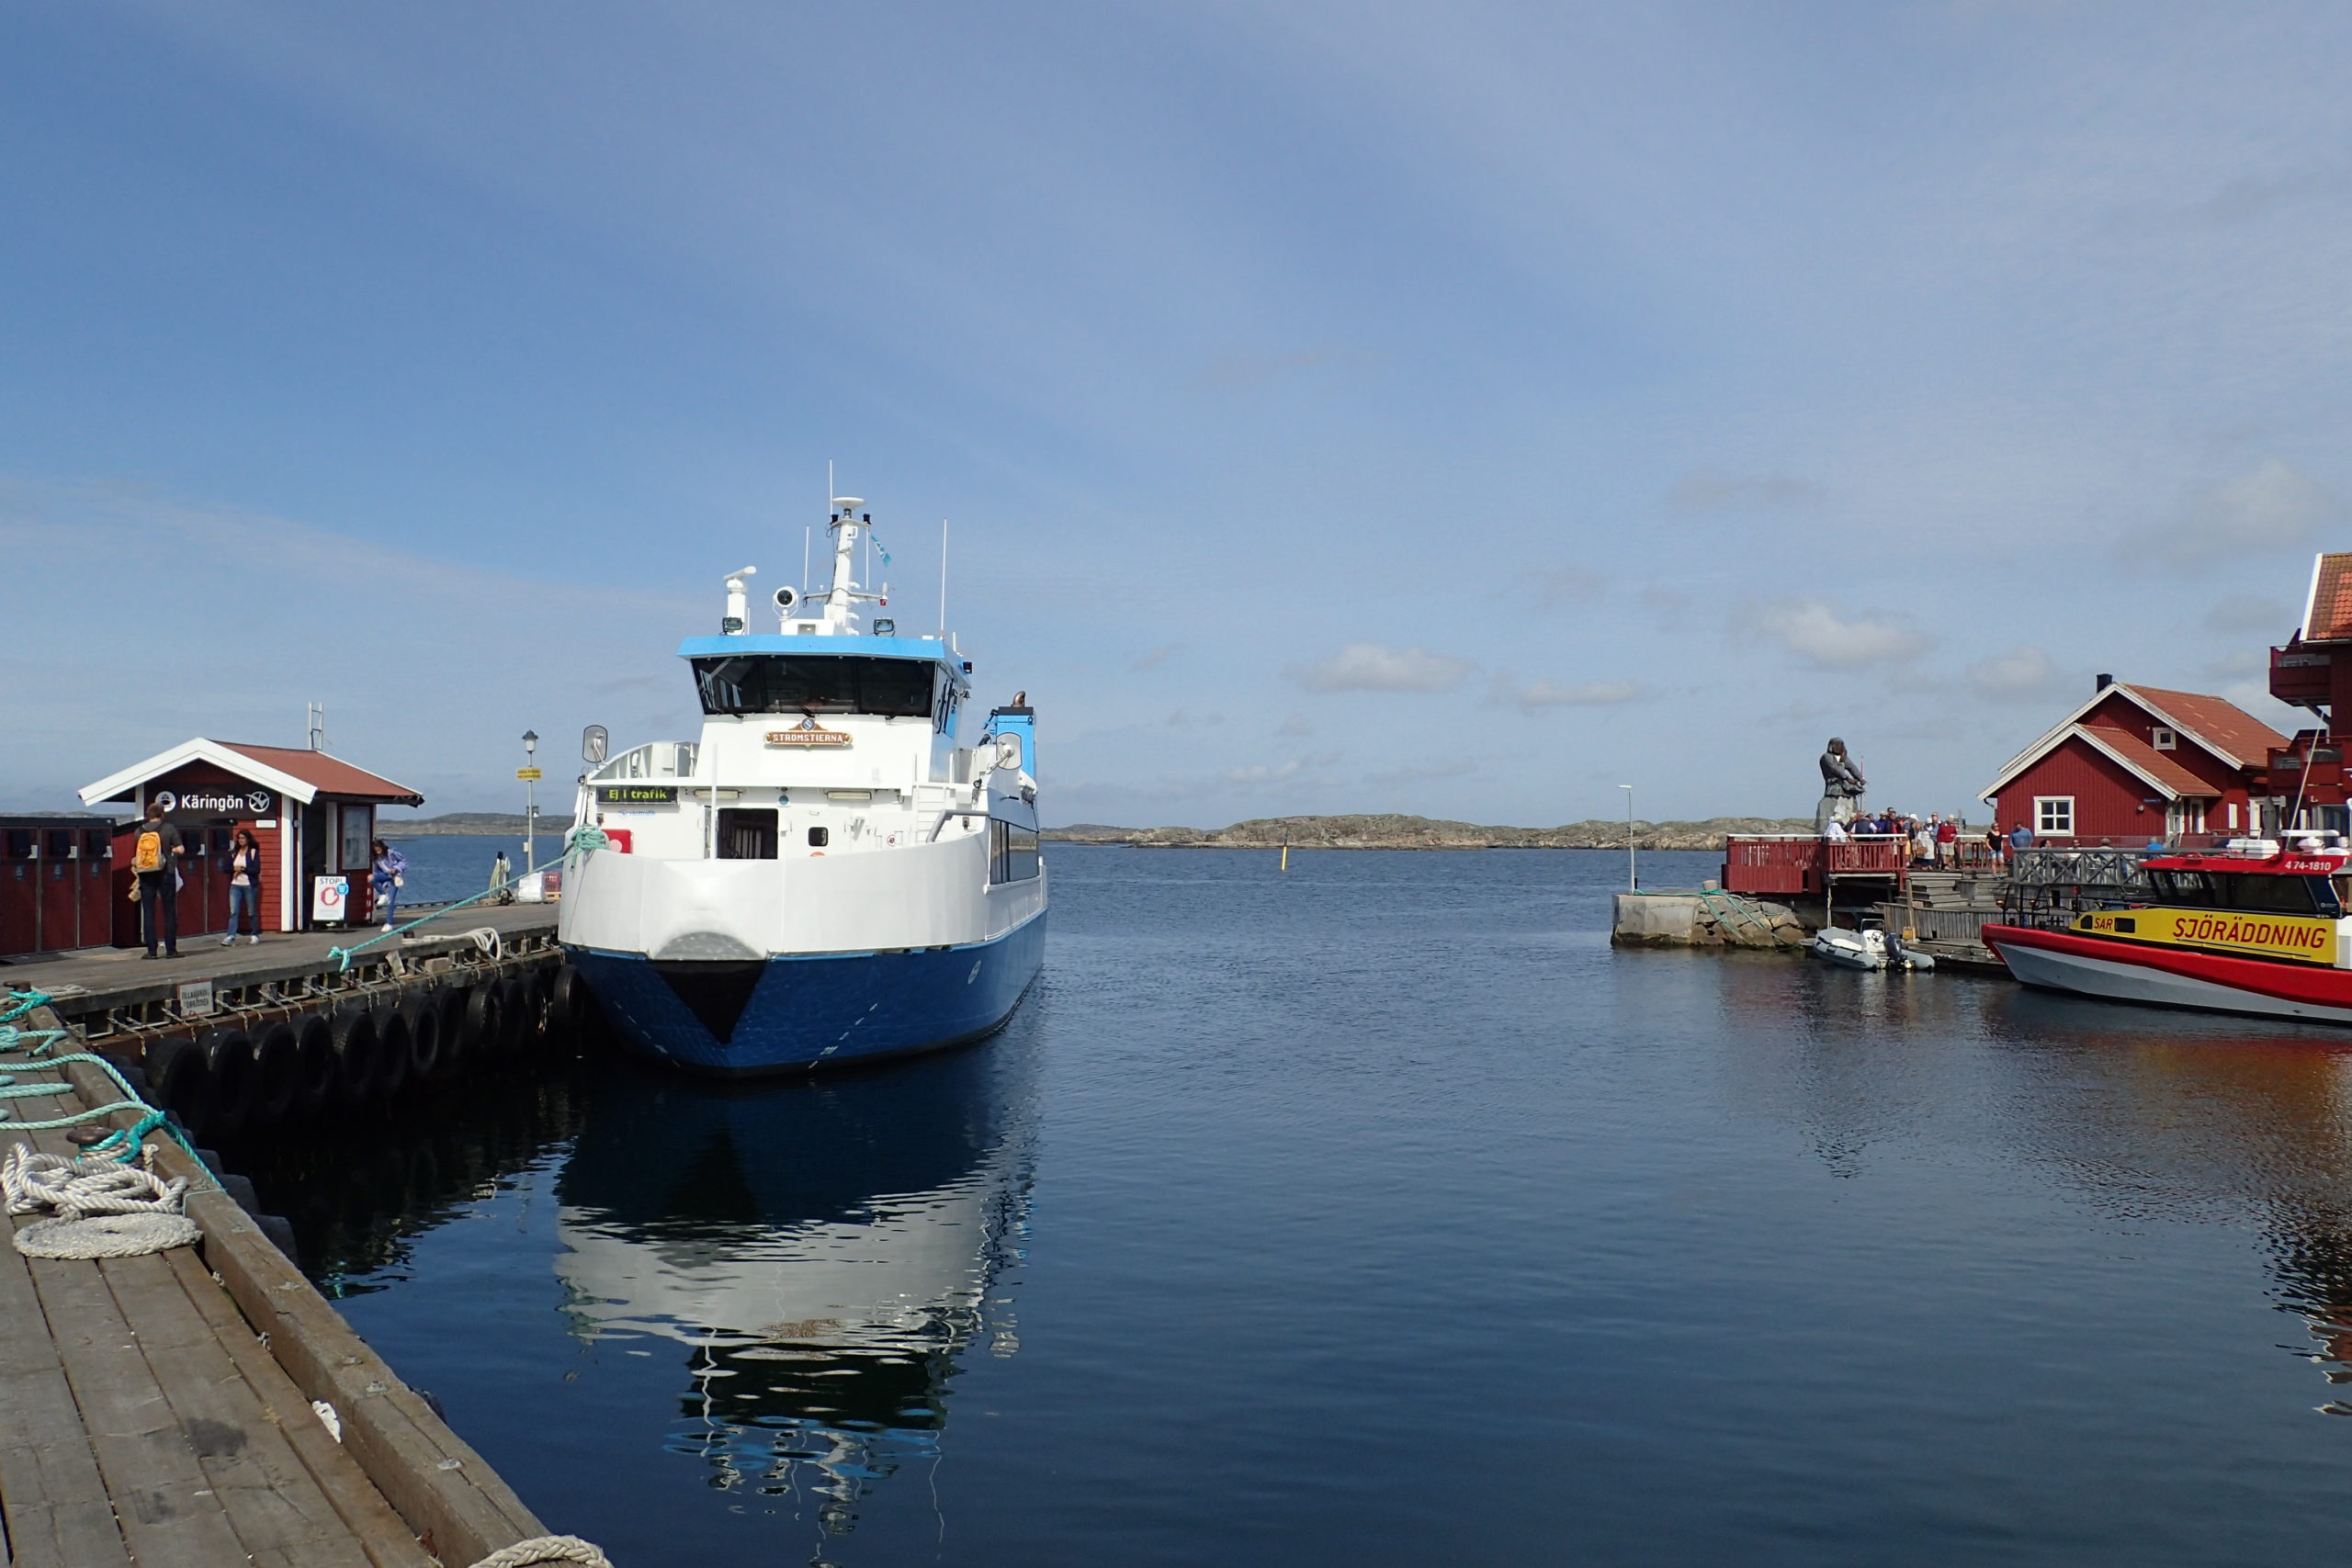 Port de Käringön amb el ferry amarrat